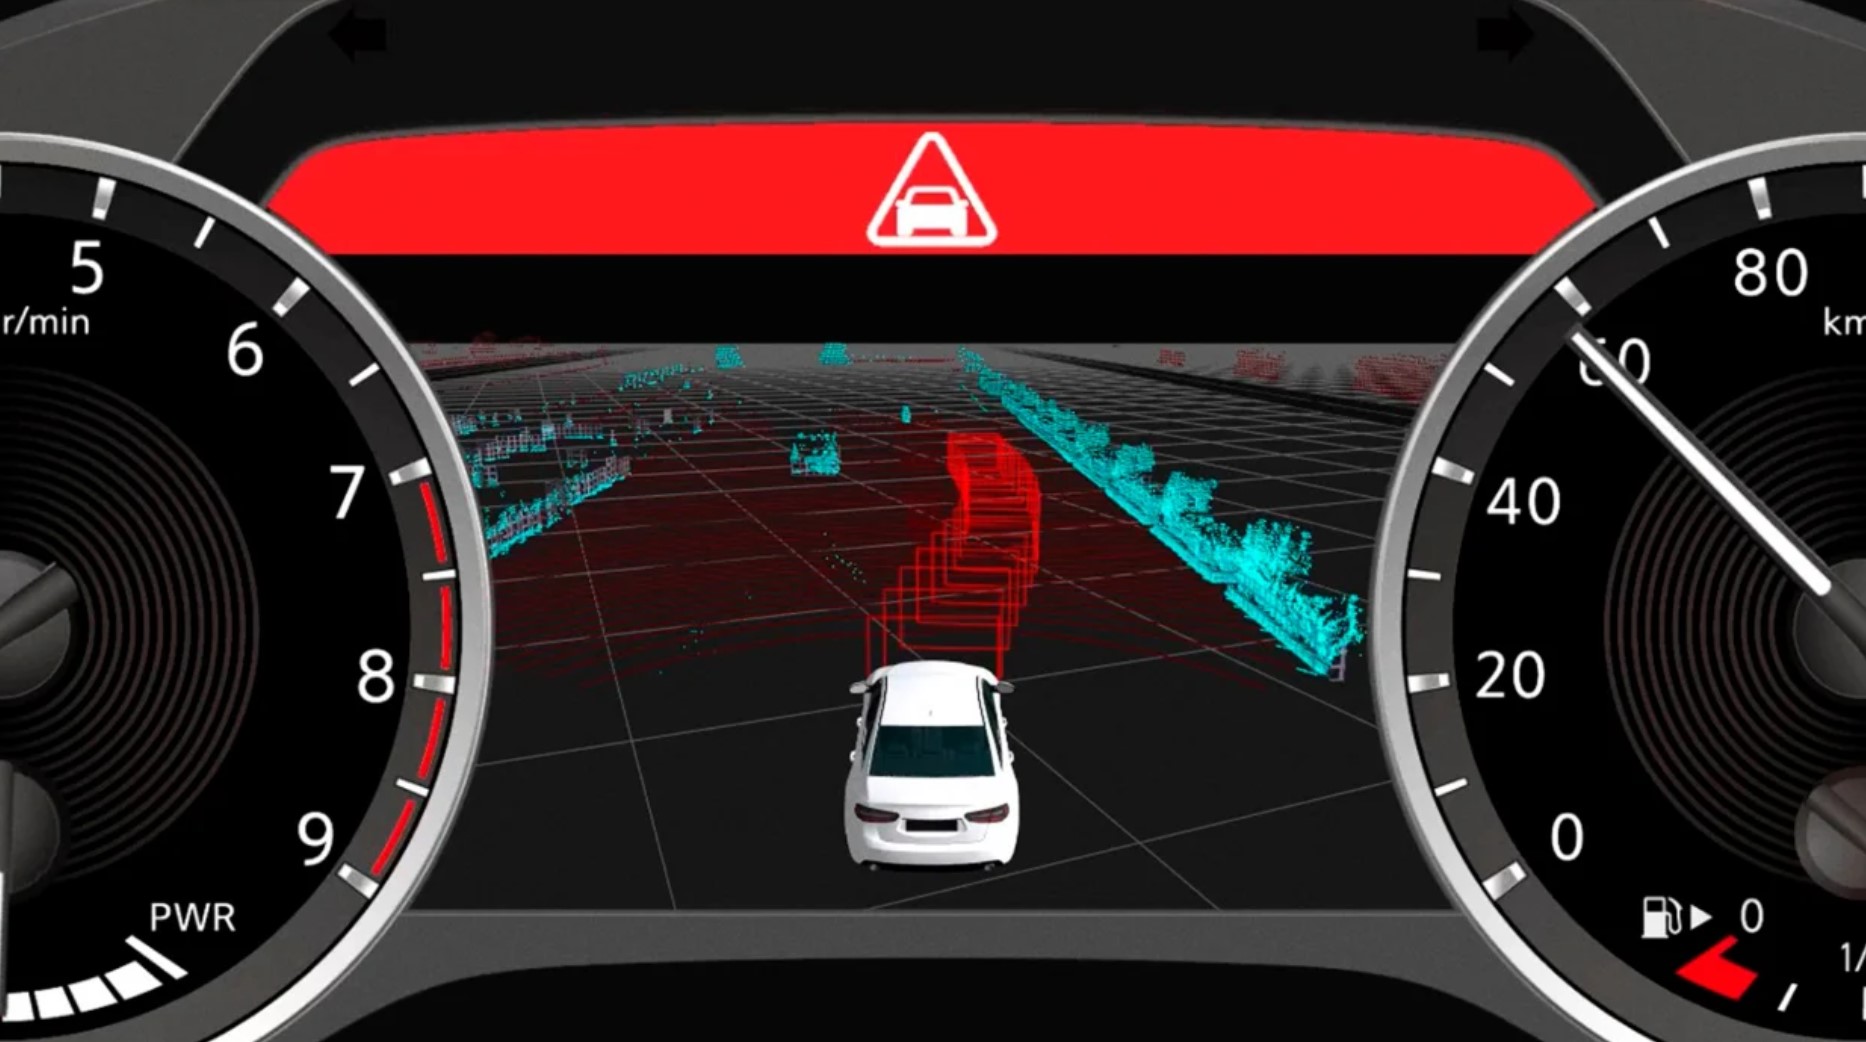 aria-label="Autonomous driverless Nissan 5"